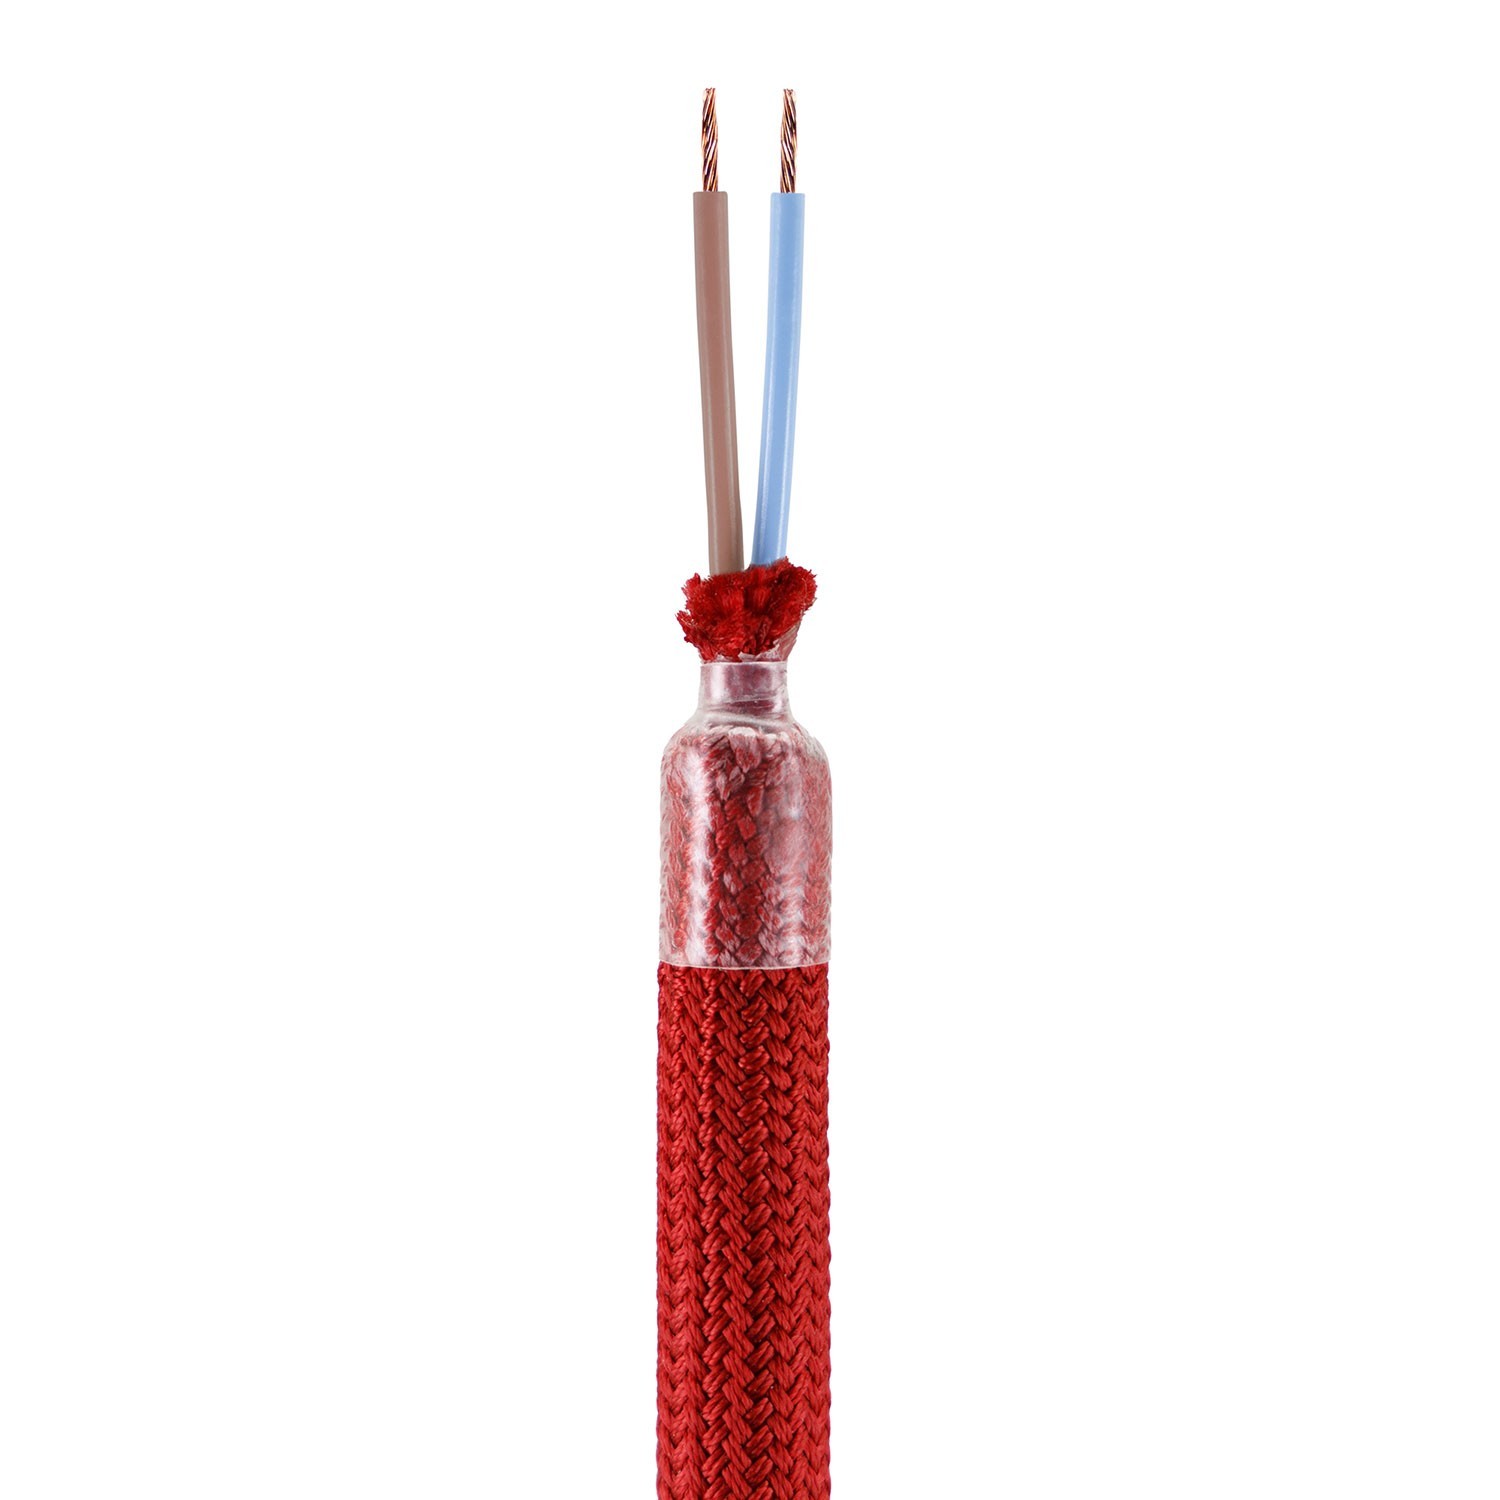 Creative Flex készlet rugalmas csővel, Piros RM09 szövet borítással, fém csatlakozókkal